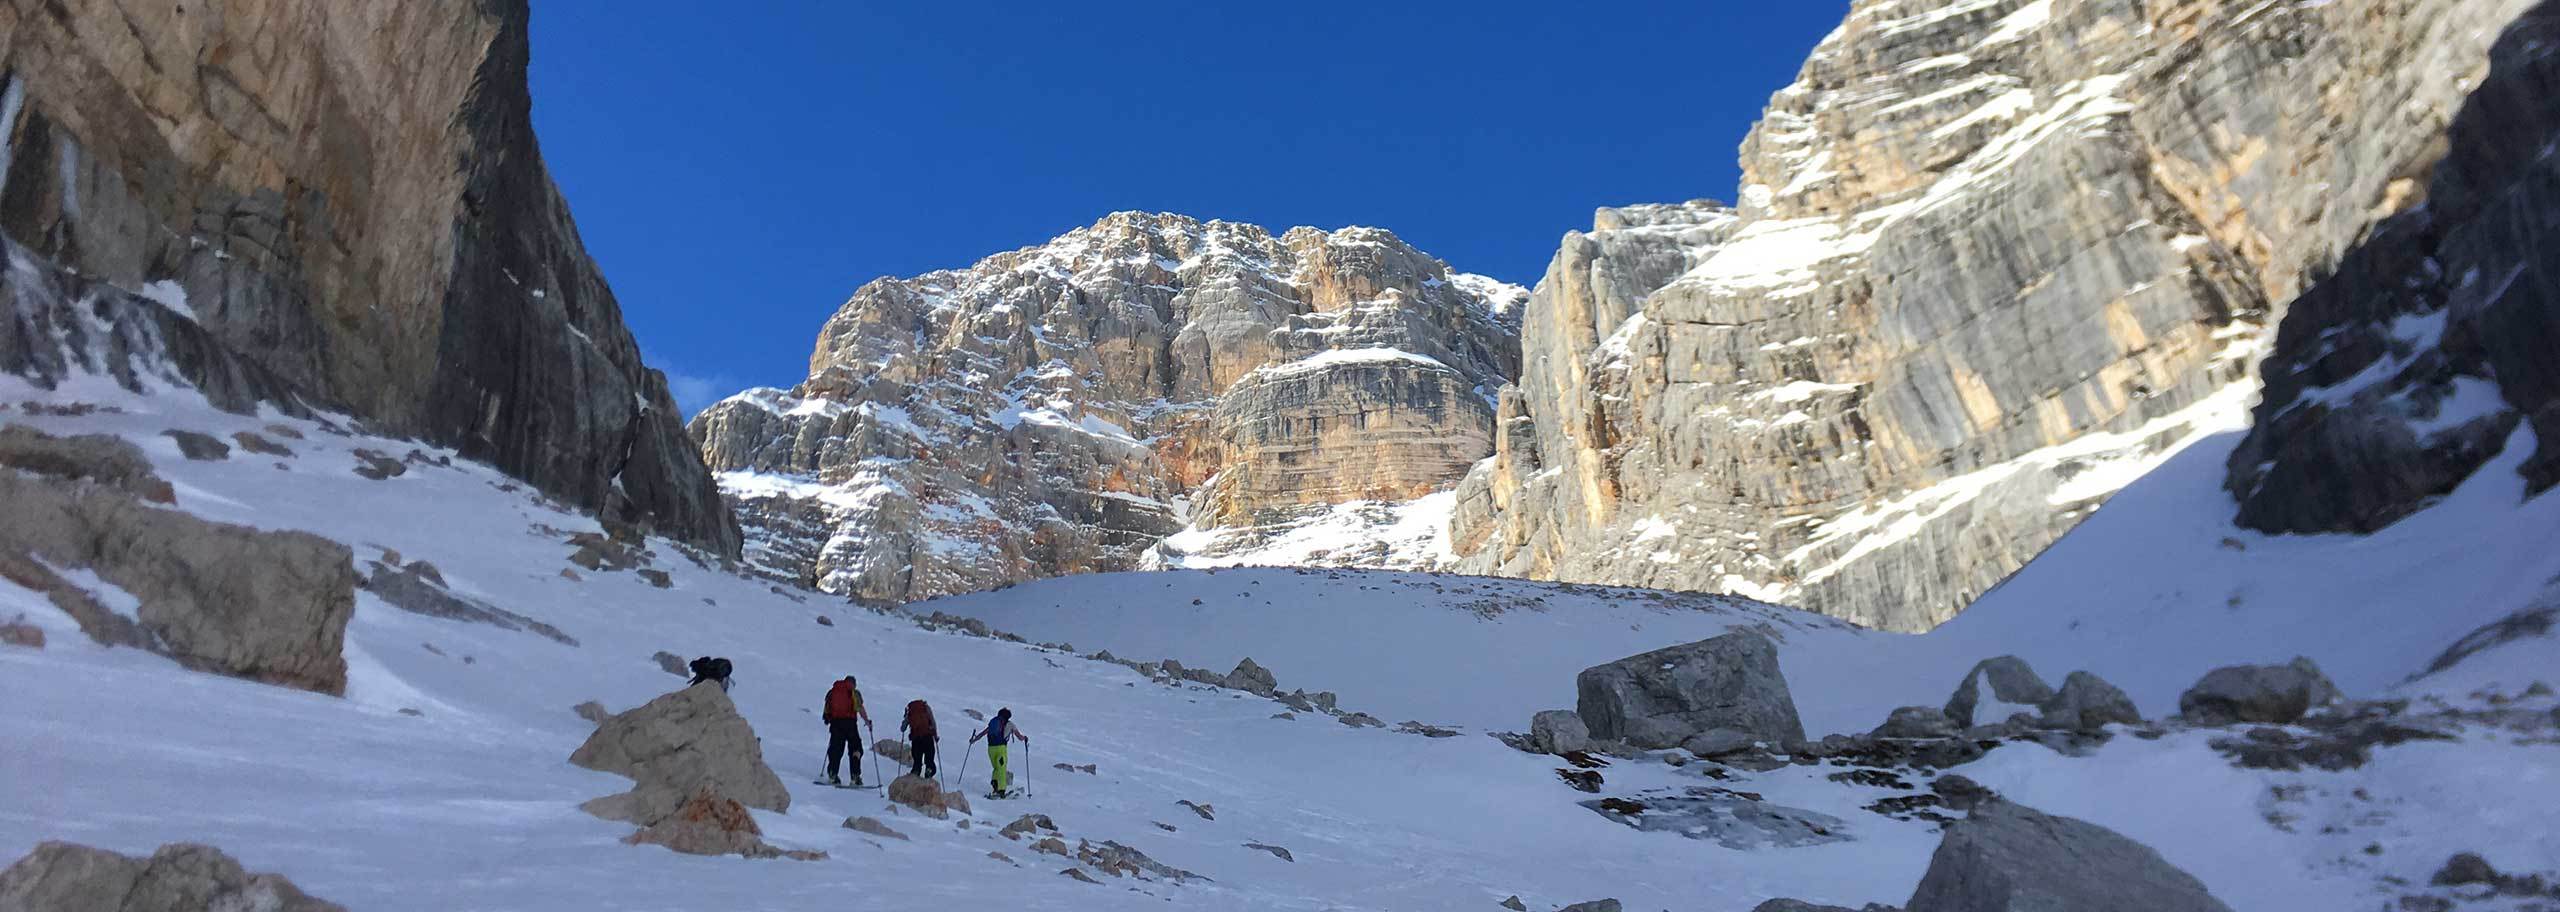 Escursioni Sci Alpinistiche in Val Badia